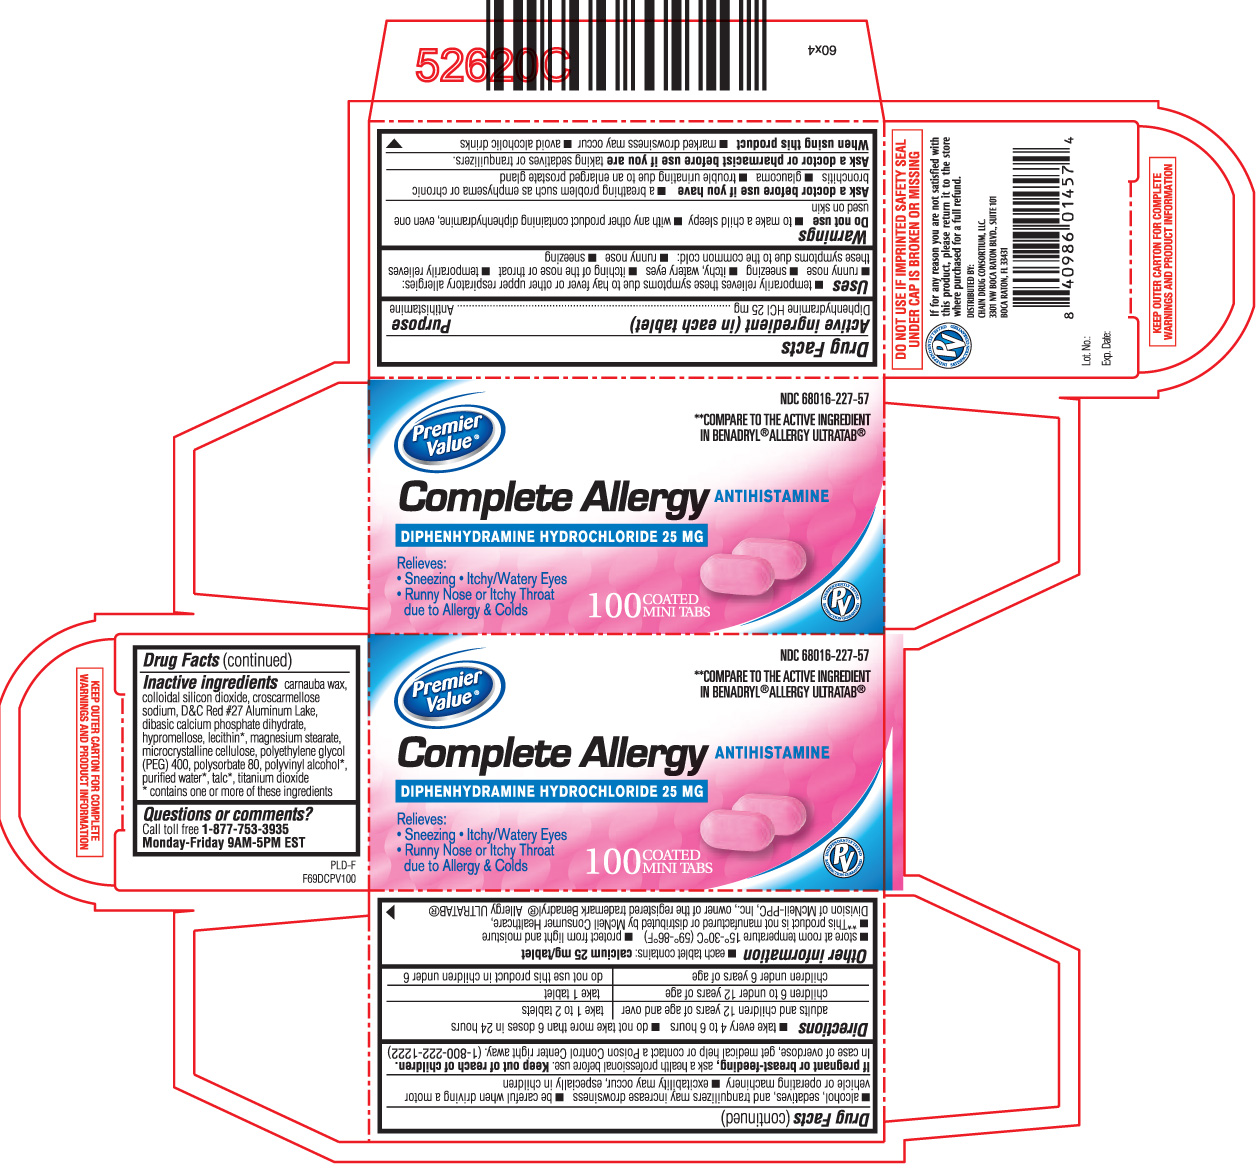 Premier value complete allergy antihistamine mini tabs